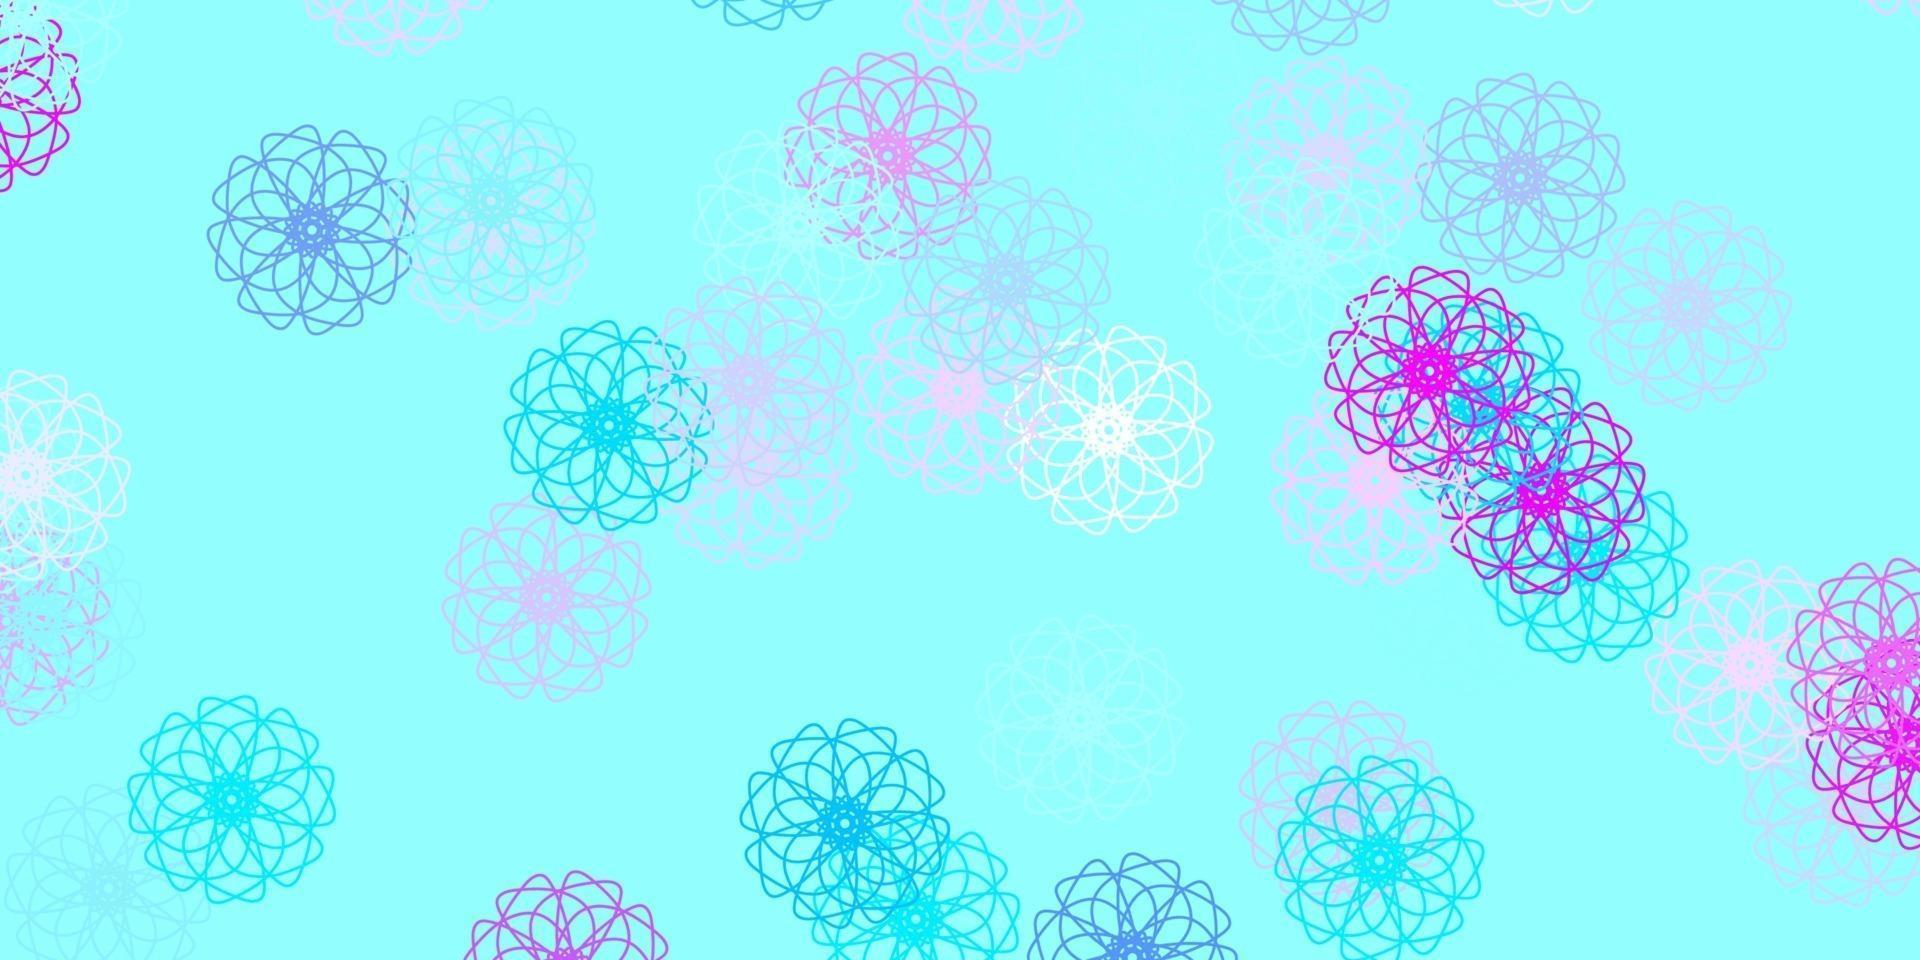 modello di doodle vettoriale rosa chiaro, blu con fiori.